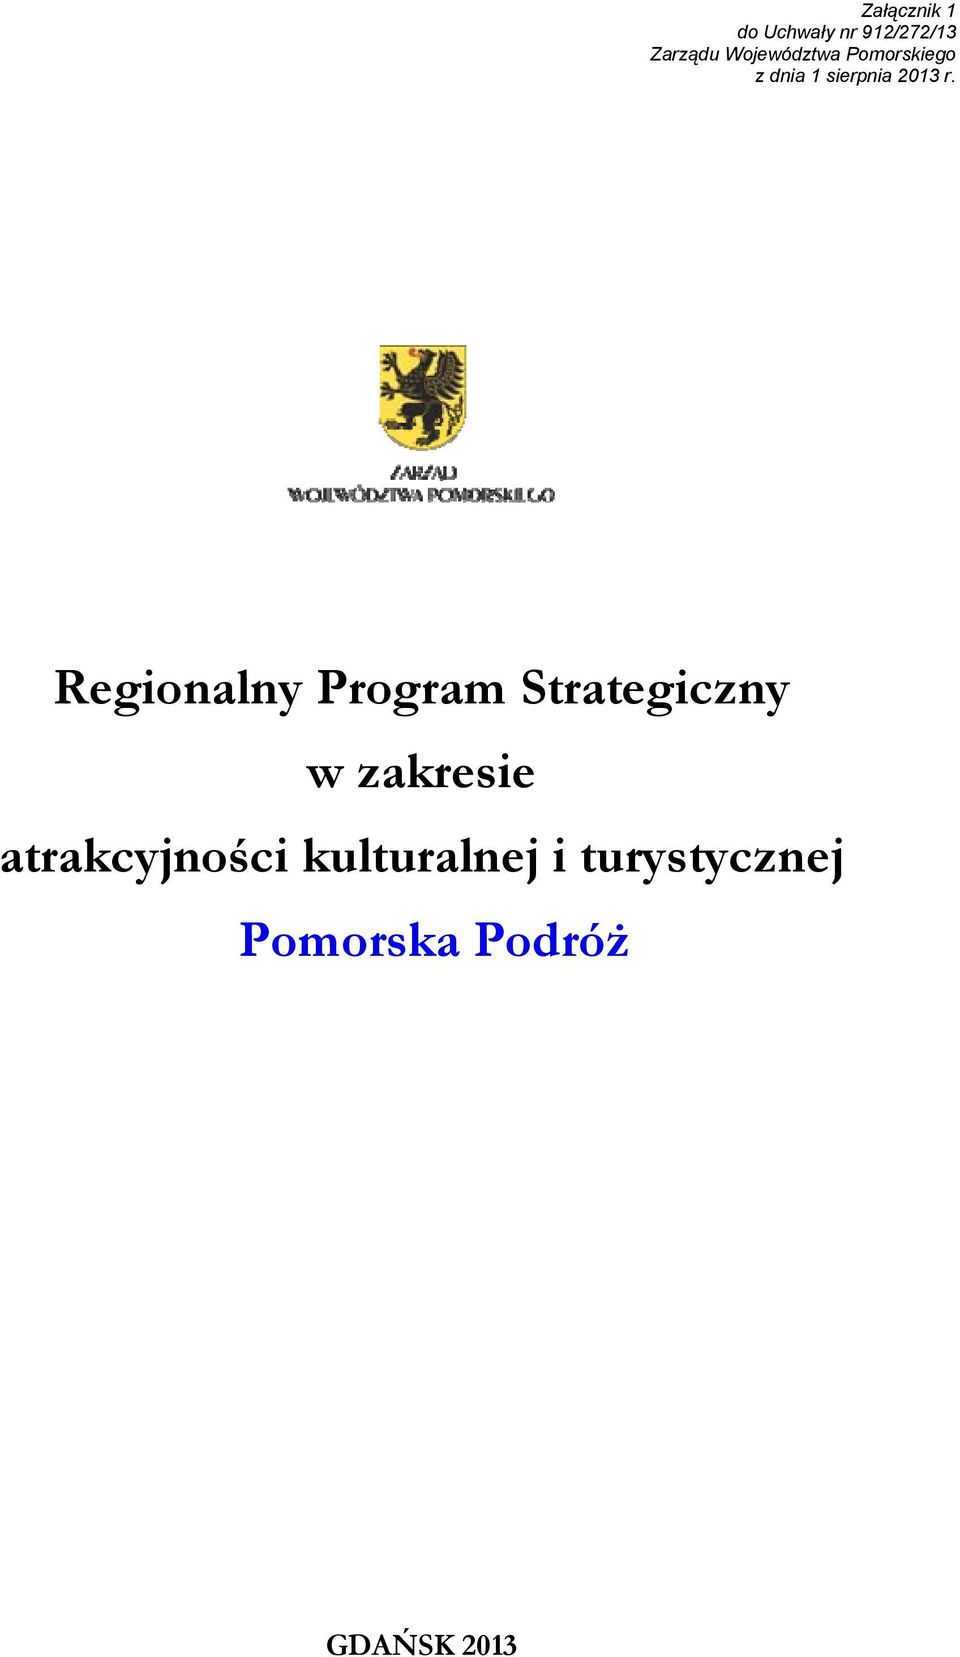 Regionalny Program Strategiczny w zakresie